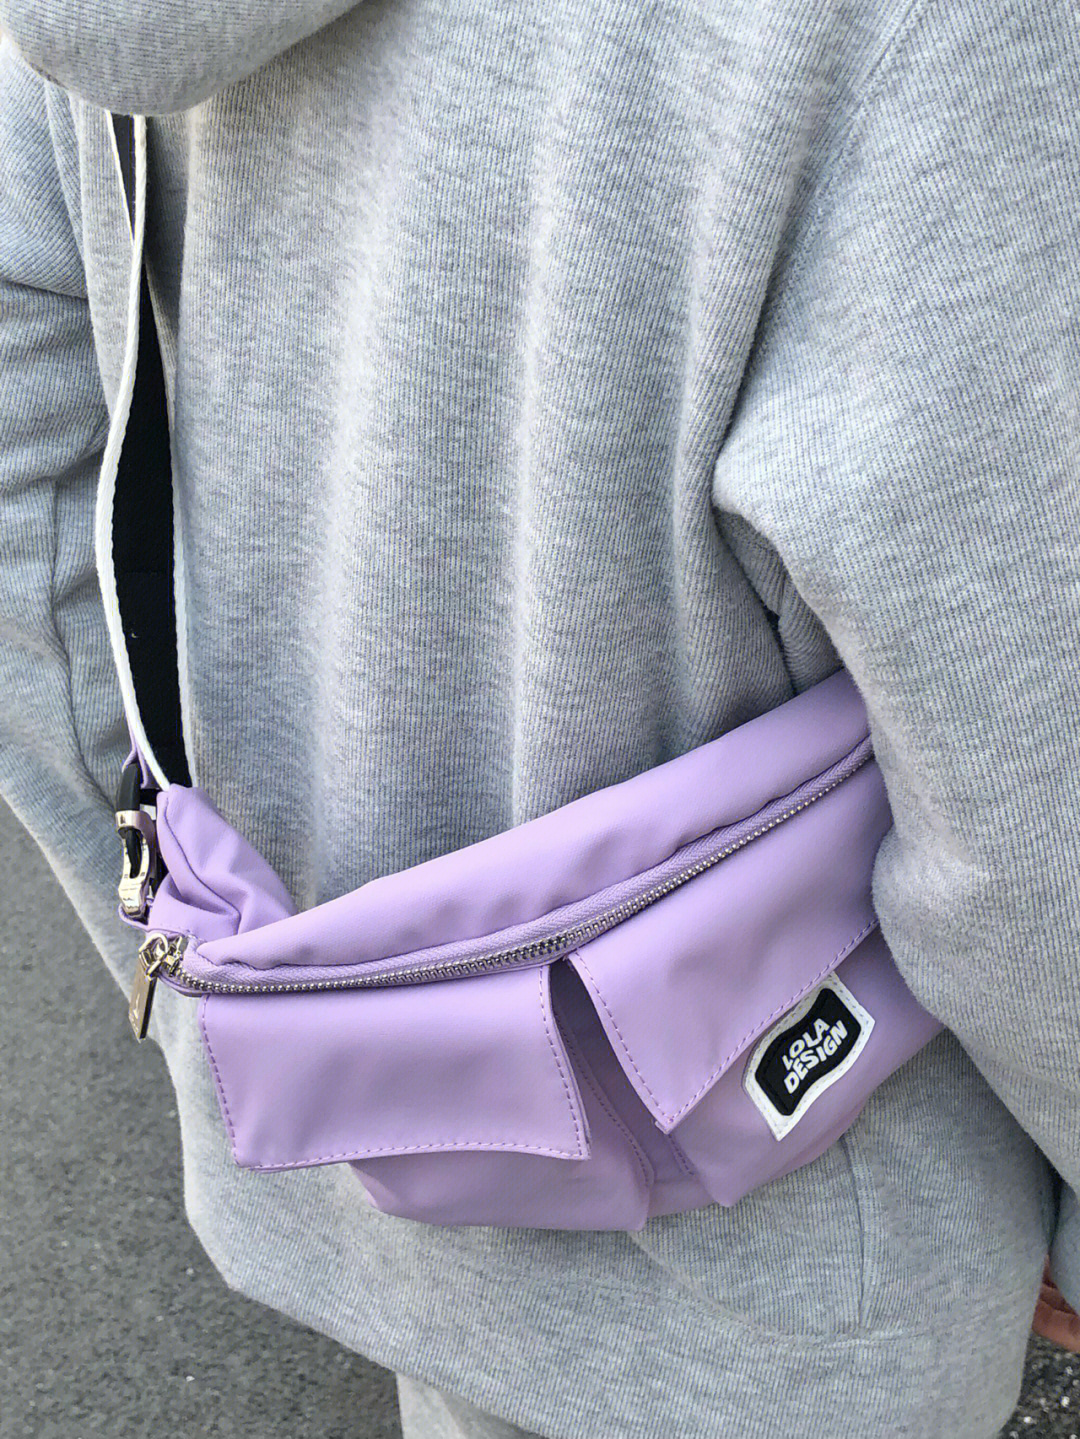 心心念念的腰包真的好惊喜质感绝绝子!这个紫色90真的00我!